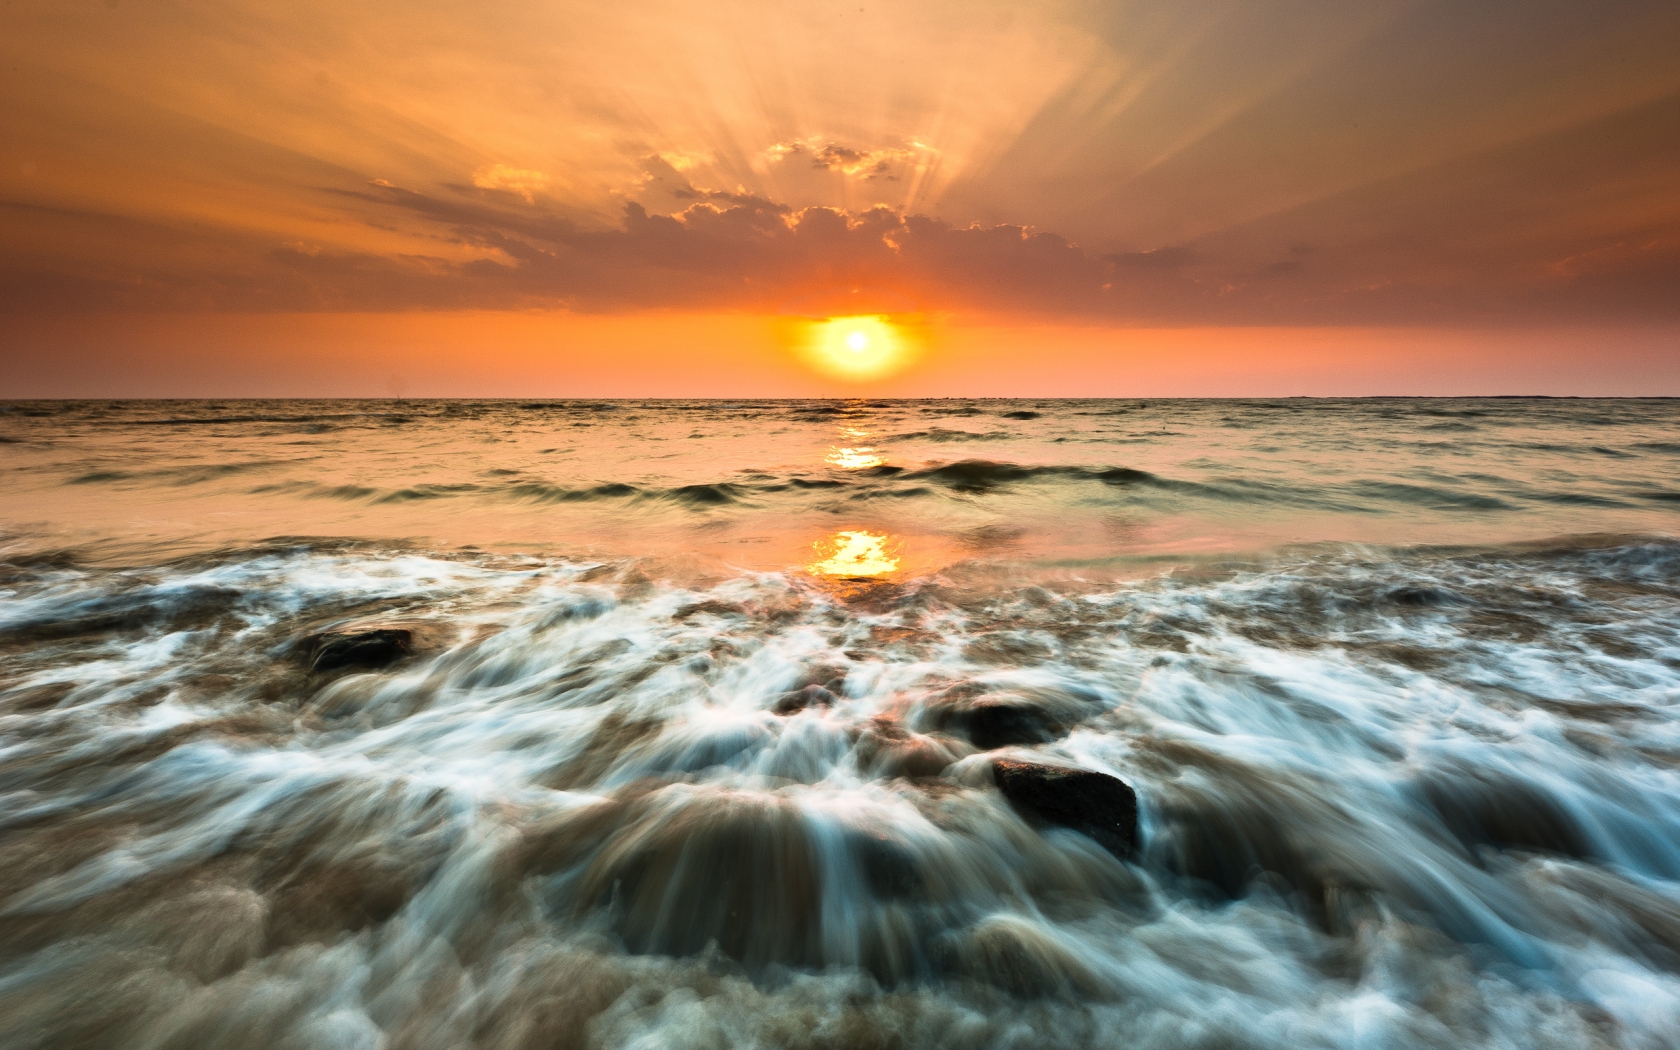 Gorai Beach Sunset for 1680 x 1050 widescreen resolution